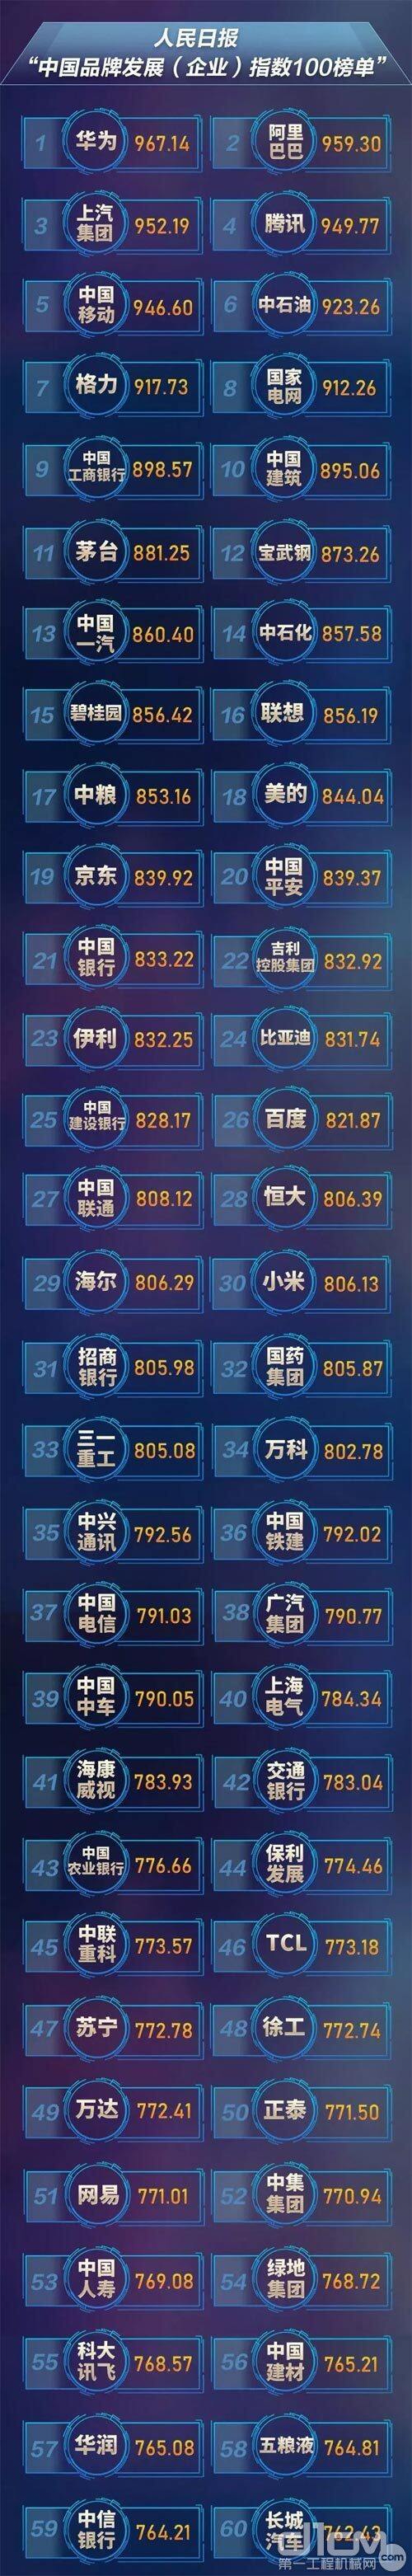 人民日报权威发布“中国品牌发展指数100榜单”